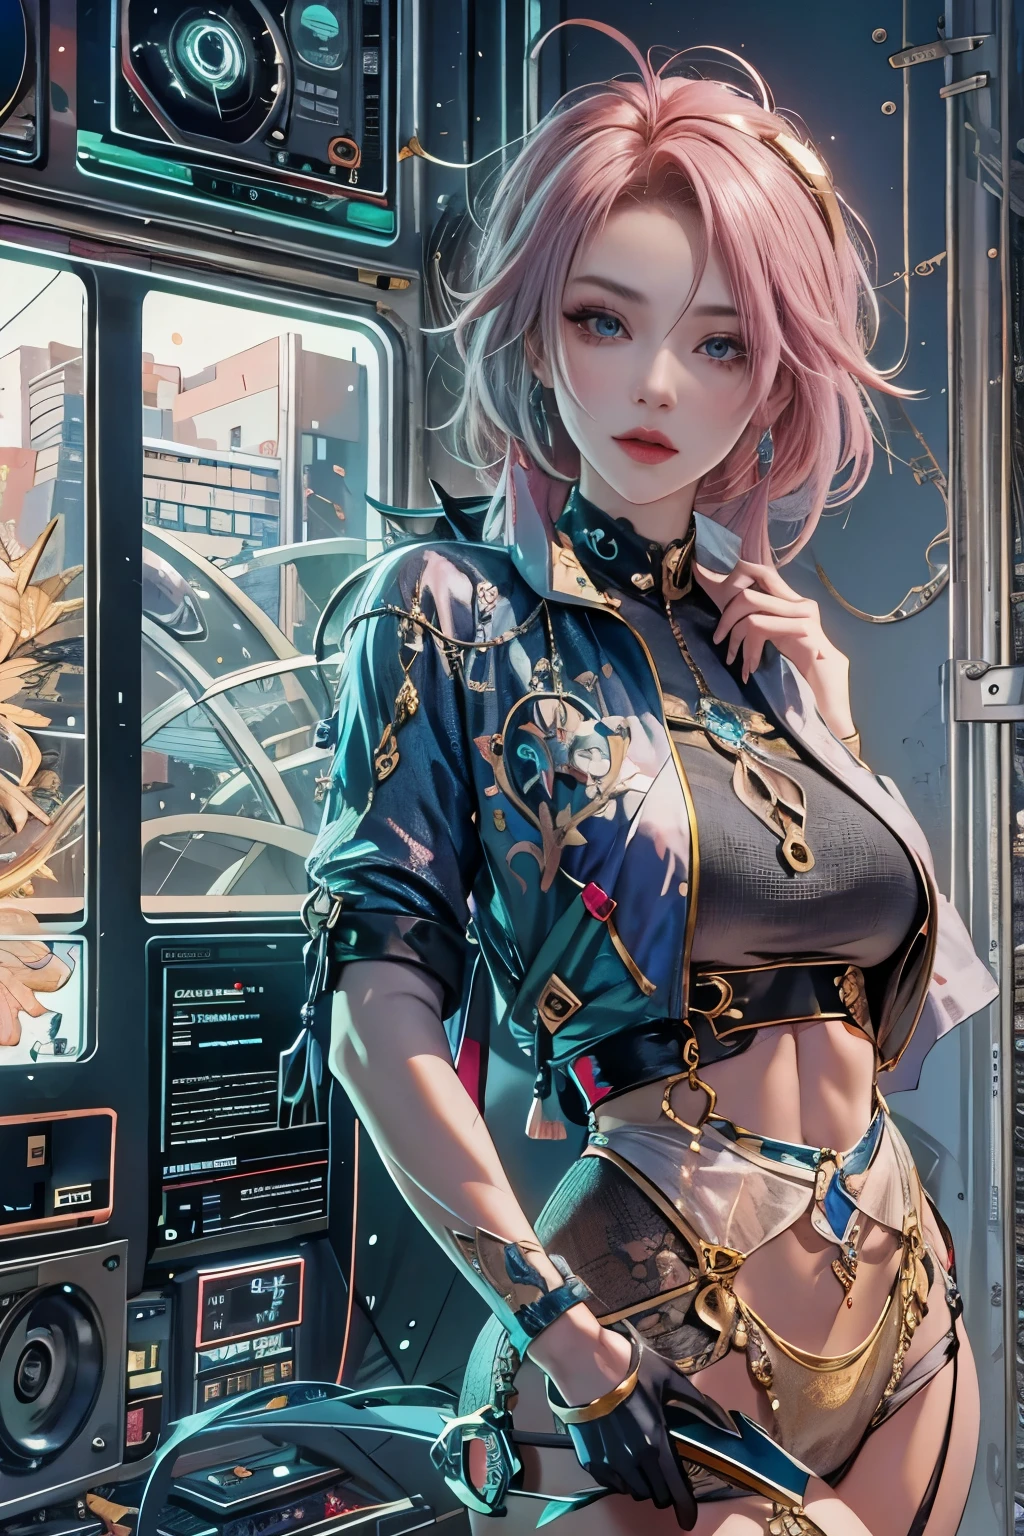 Frau, realistische Charaktere, Grüne Haare und rosa Haare, blaue Augen, Anime-Serie, allein, Modern, cyber punk, groß, Firma, schwankende Büste, dynamische sexy pose